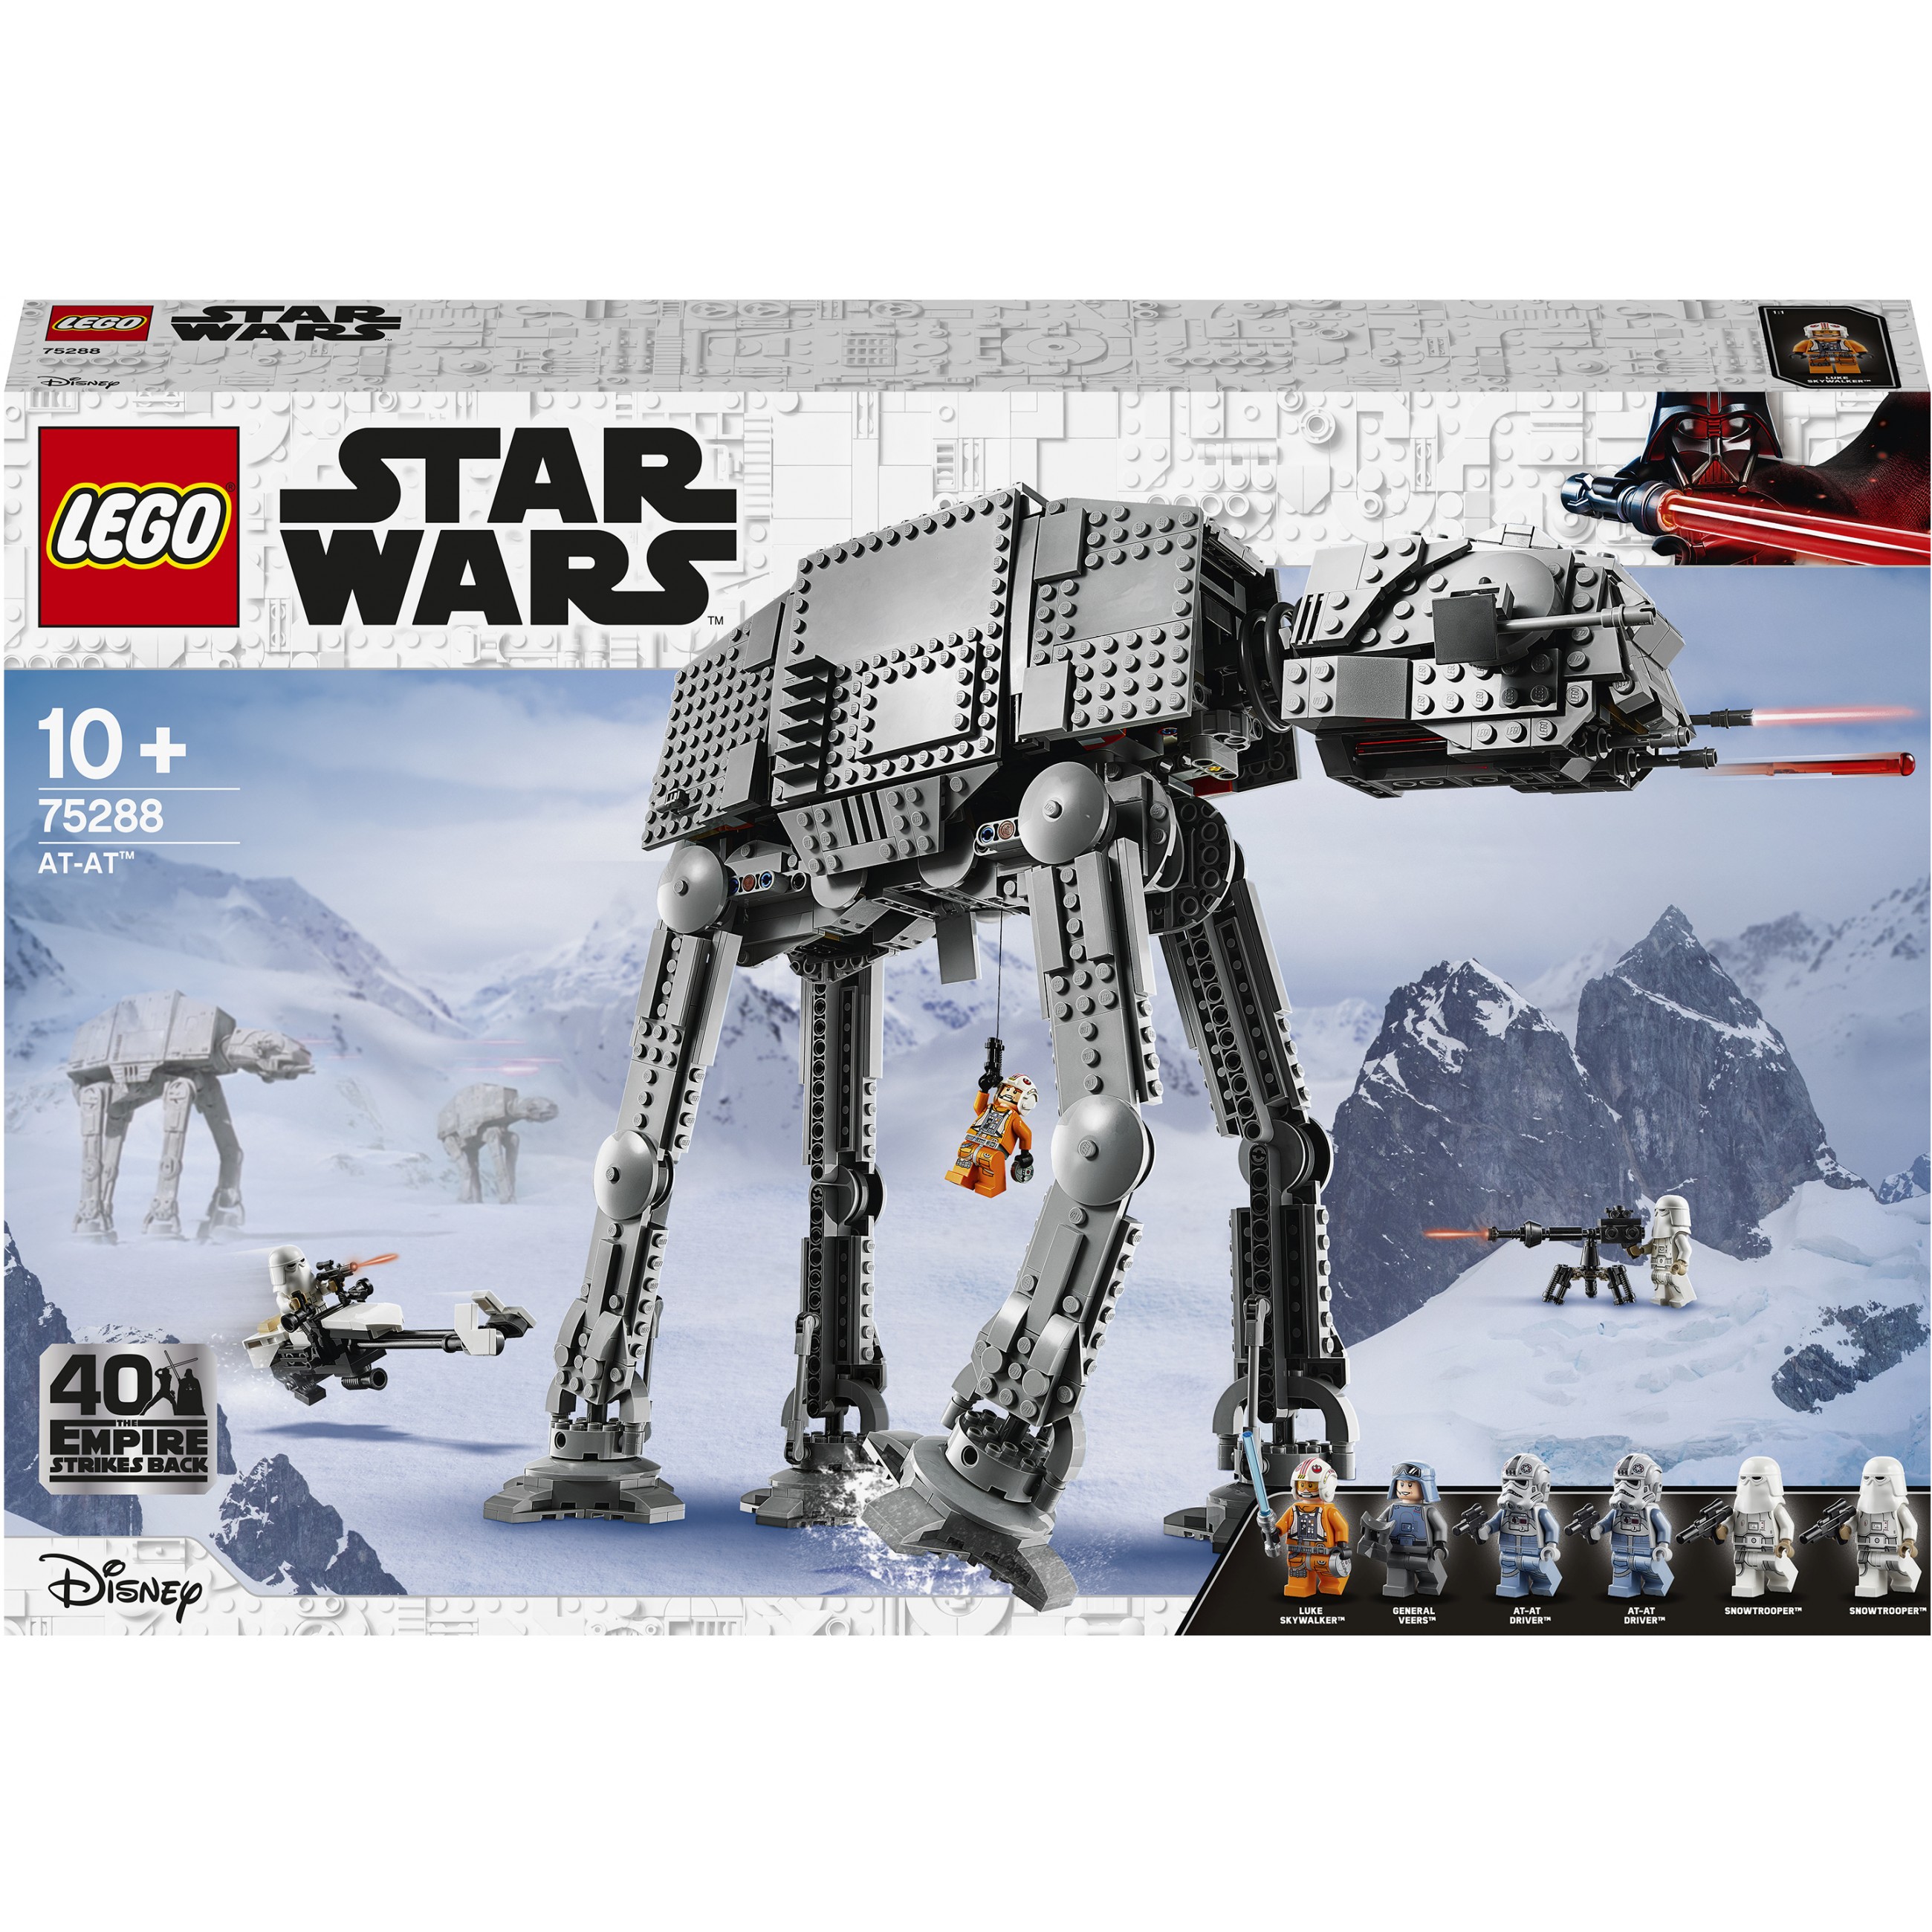 SOP LEGO Star Wars AT-AT 75288